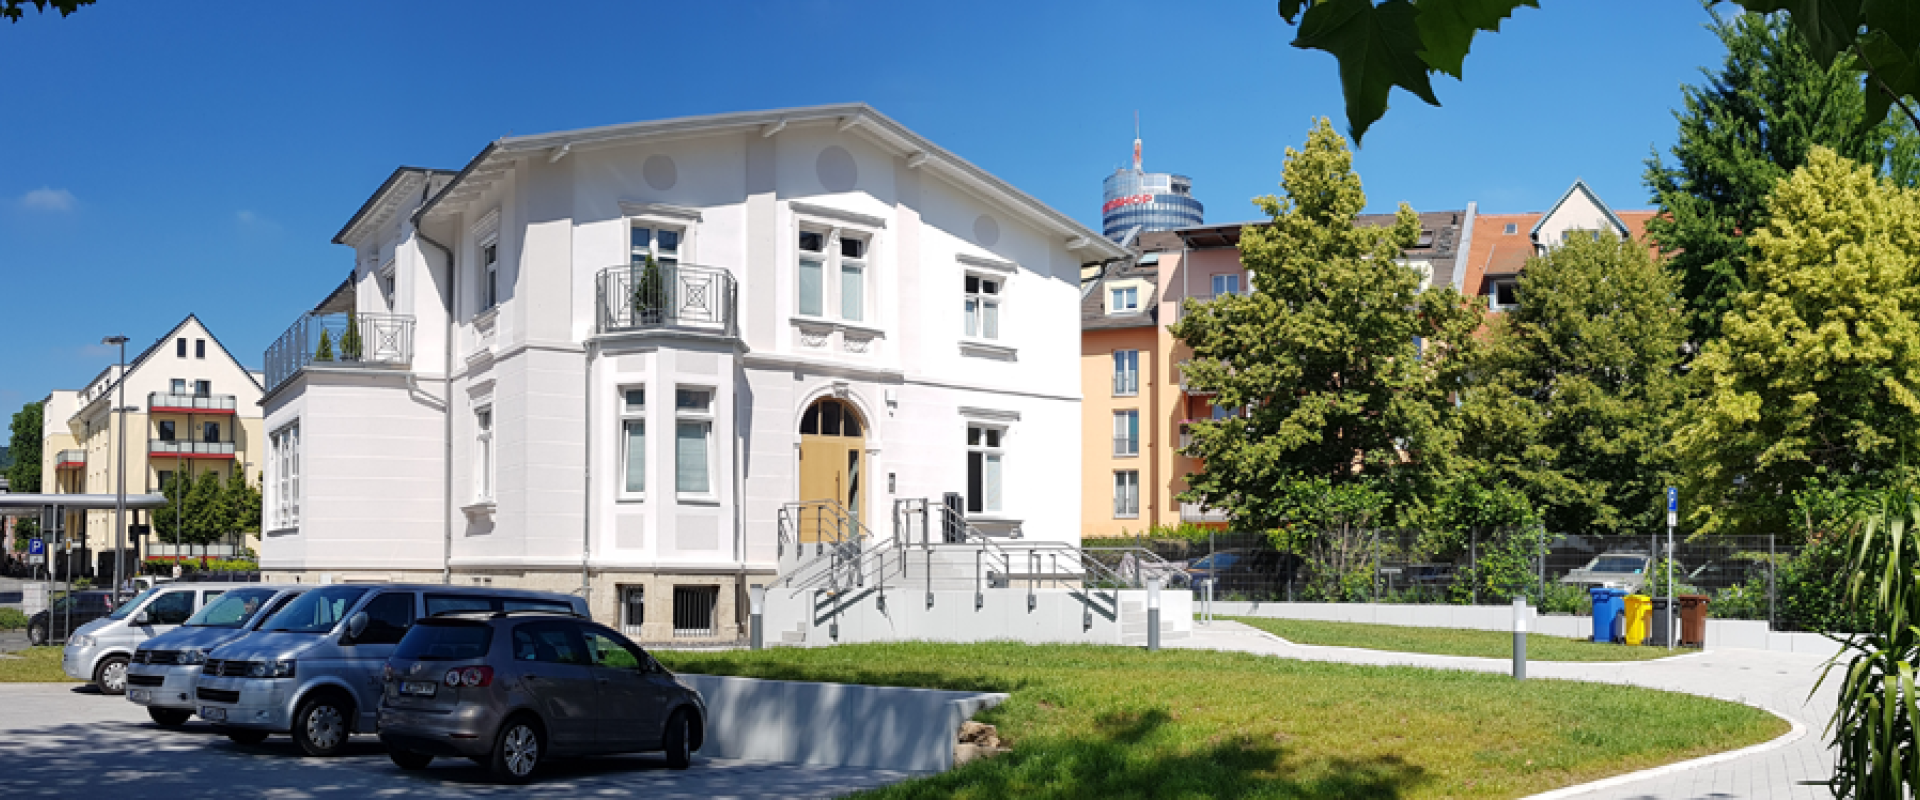 Bestattungshaus Jena – Außenaufnahme